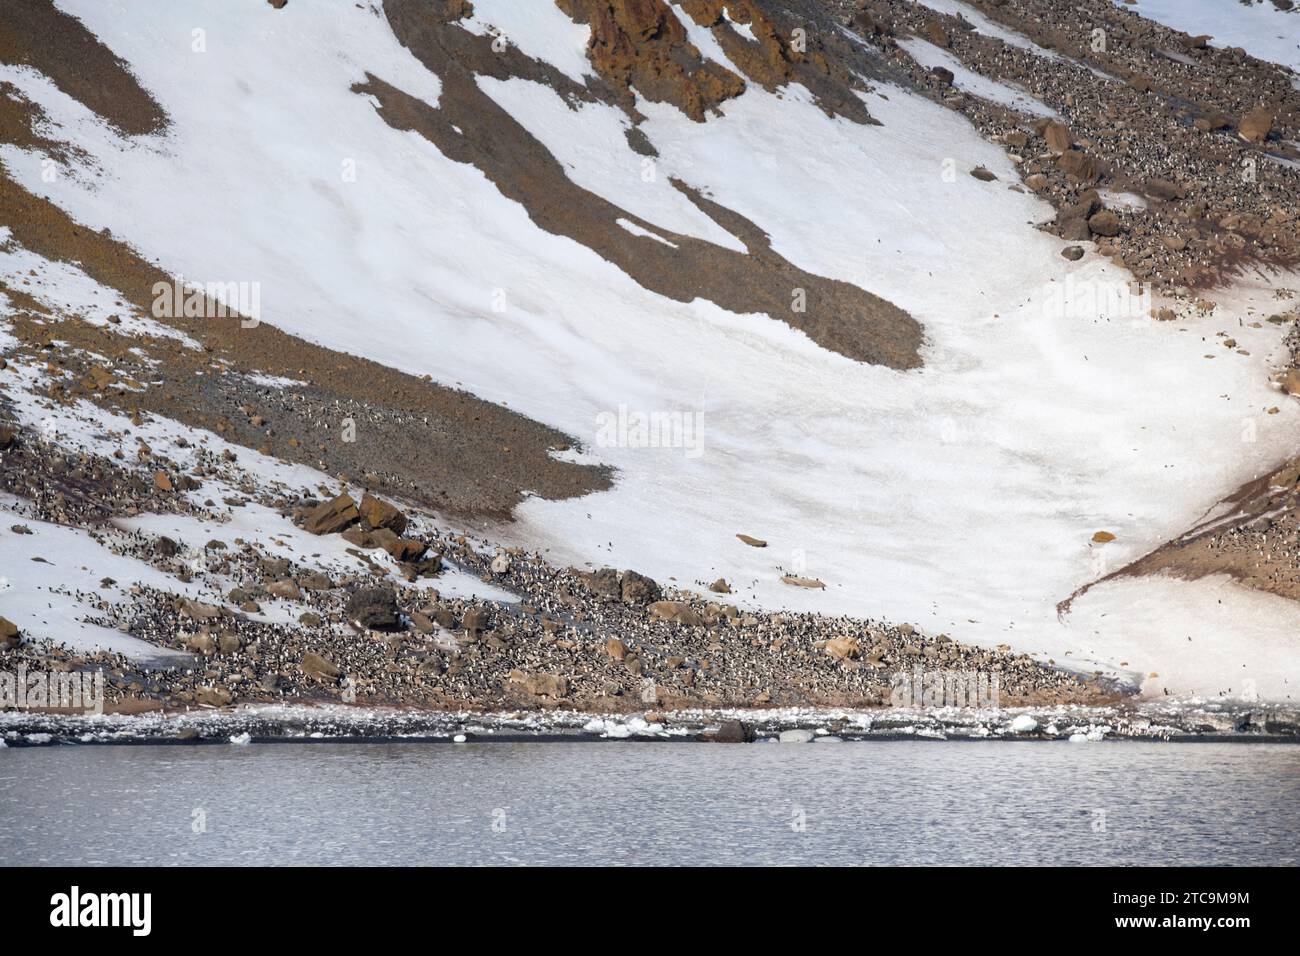 Antarctique, Brown Bluff. Colonie de pingouins Gentoo à la base de la montagne. Banque D'Images